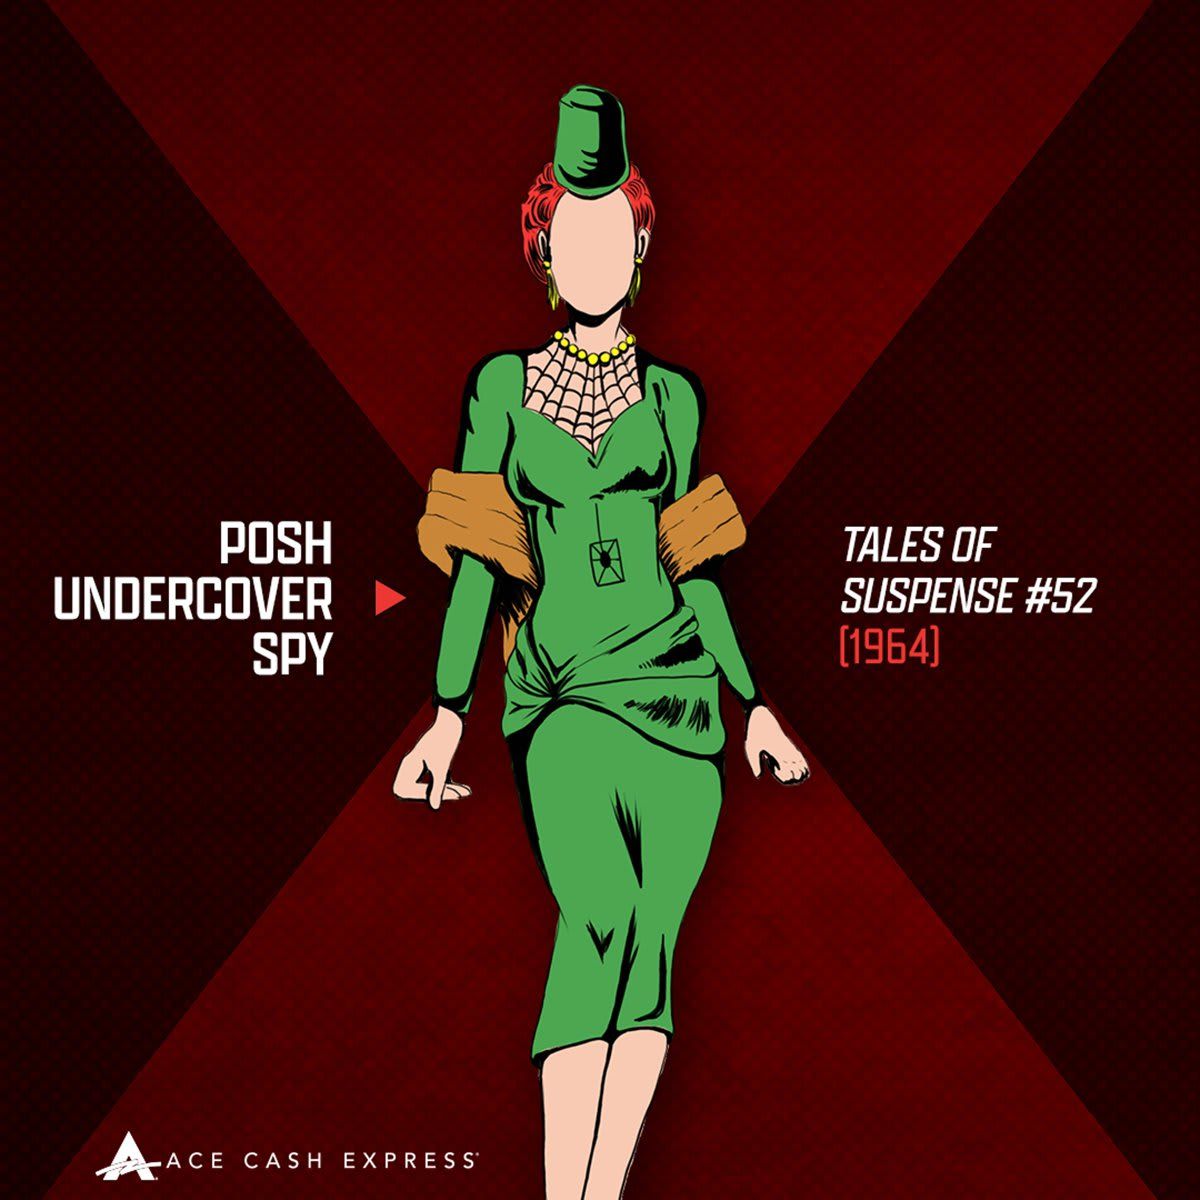 Posh Undercover Spy (Original Outfit)